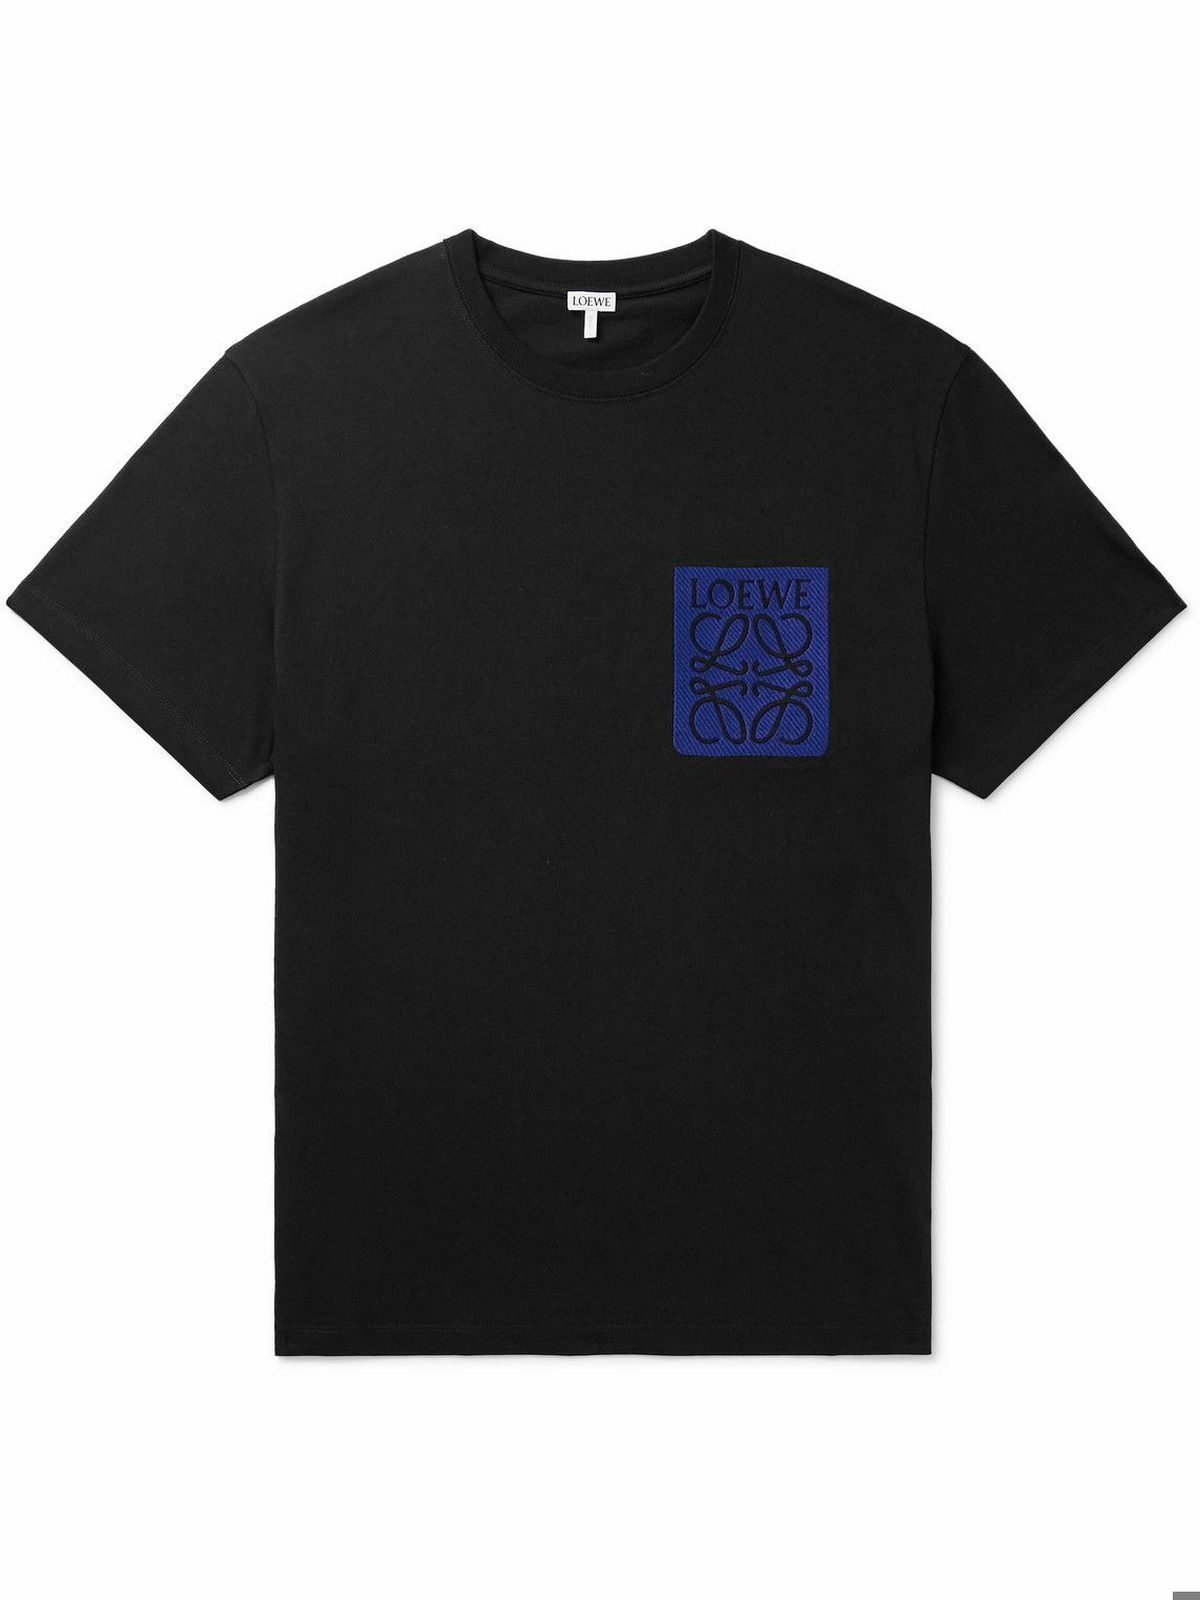 LOEWE - Logo-Appliquéd Cotton-Jersey T-Shirt - Black Loewe